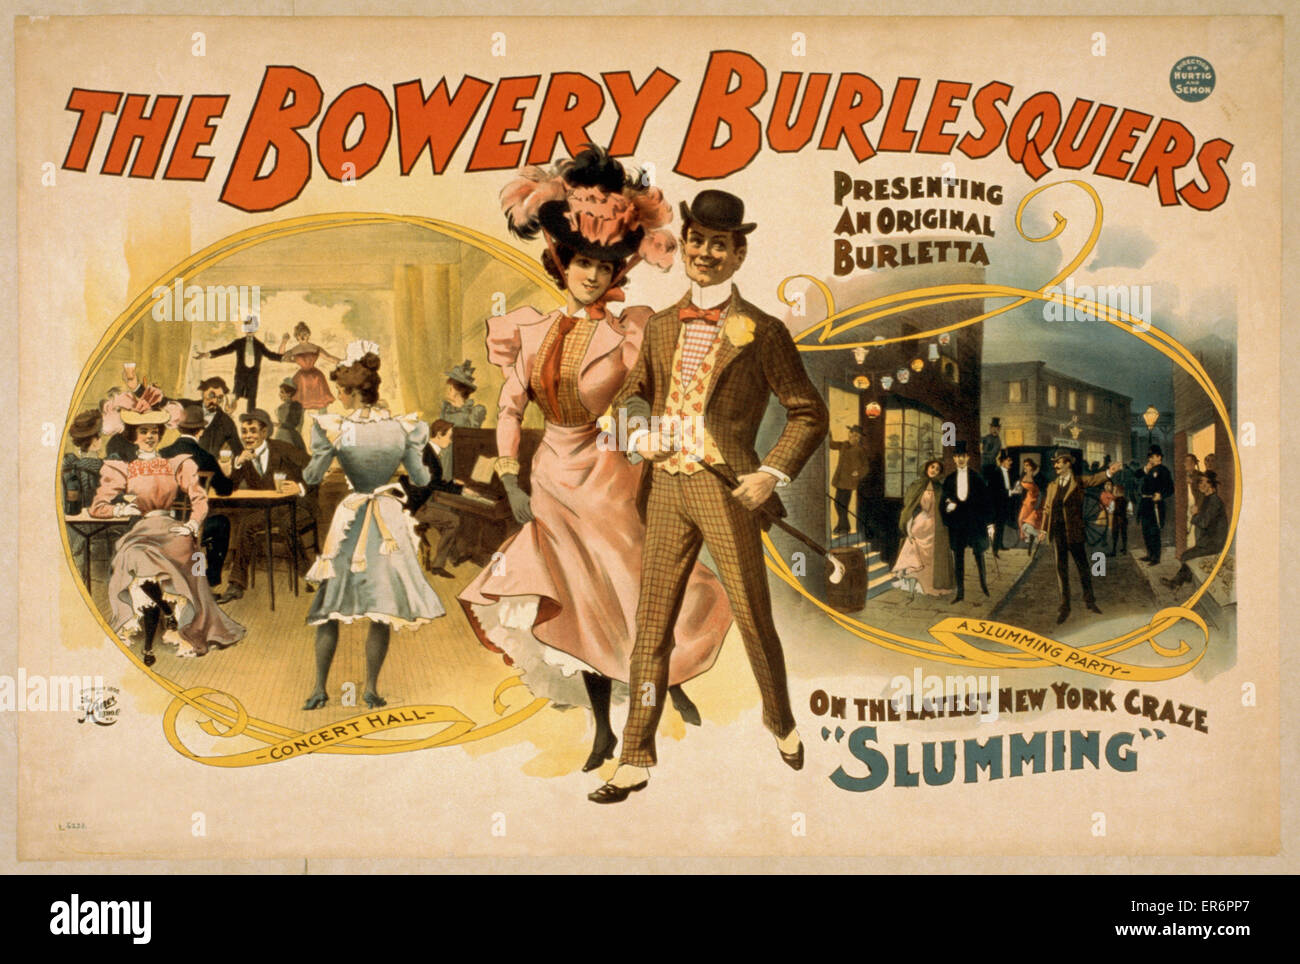 Die Bowery Burlesquers präsentiert eine original Burletta auf die neuesten New York craze, Slumming. Datum c1898. Stockfoto